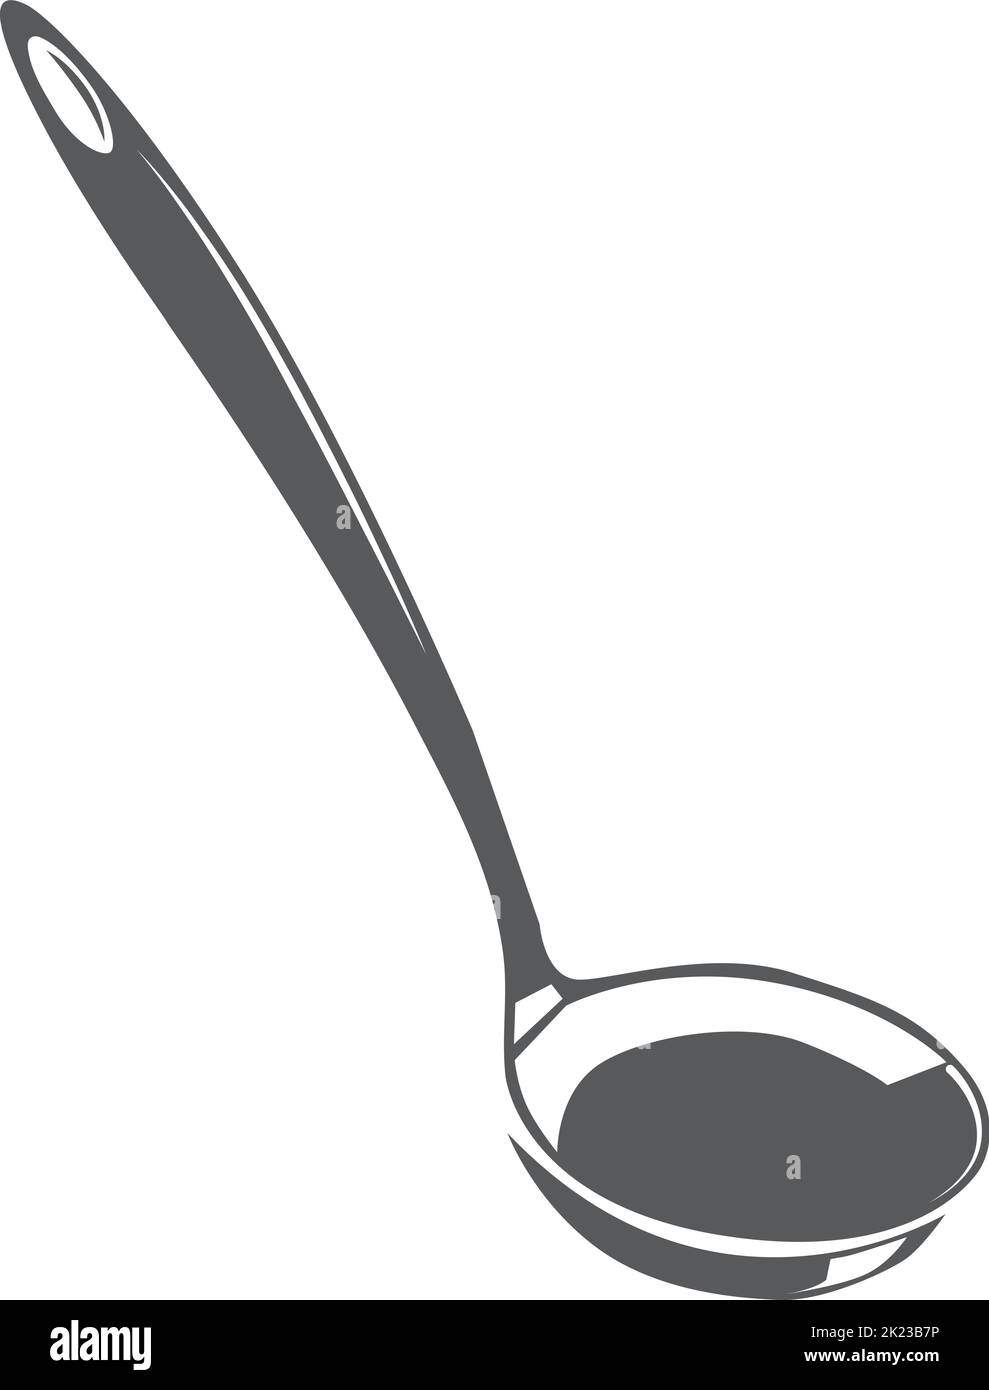 Schöpflöffel-Symbol. Schwarzes Suppenschüssel-Werkzeug Stock Vektor